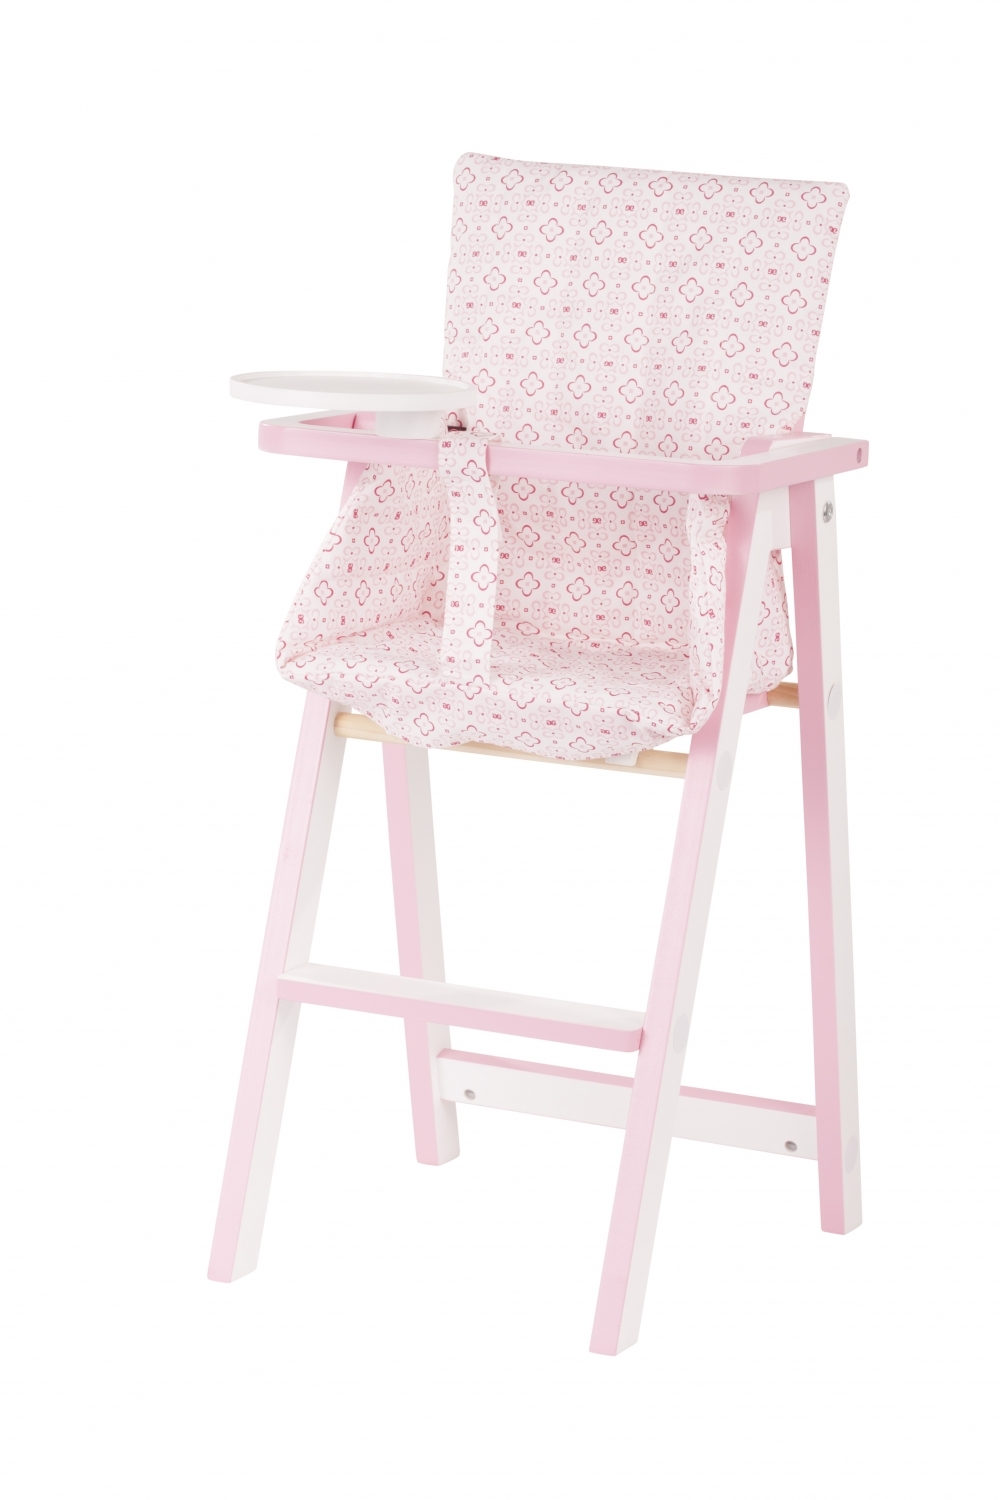 houten stoel, Götz accessoire alle poppen, kinderstoeltje pop